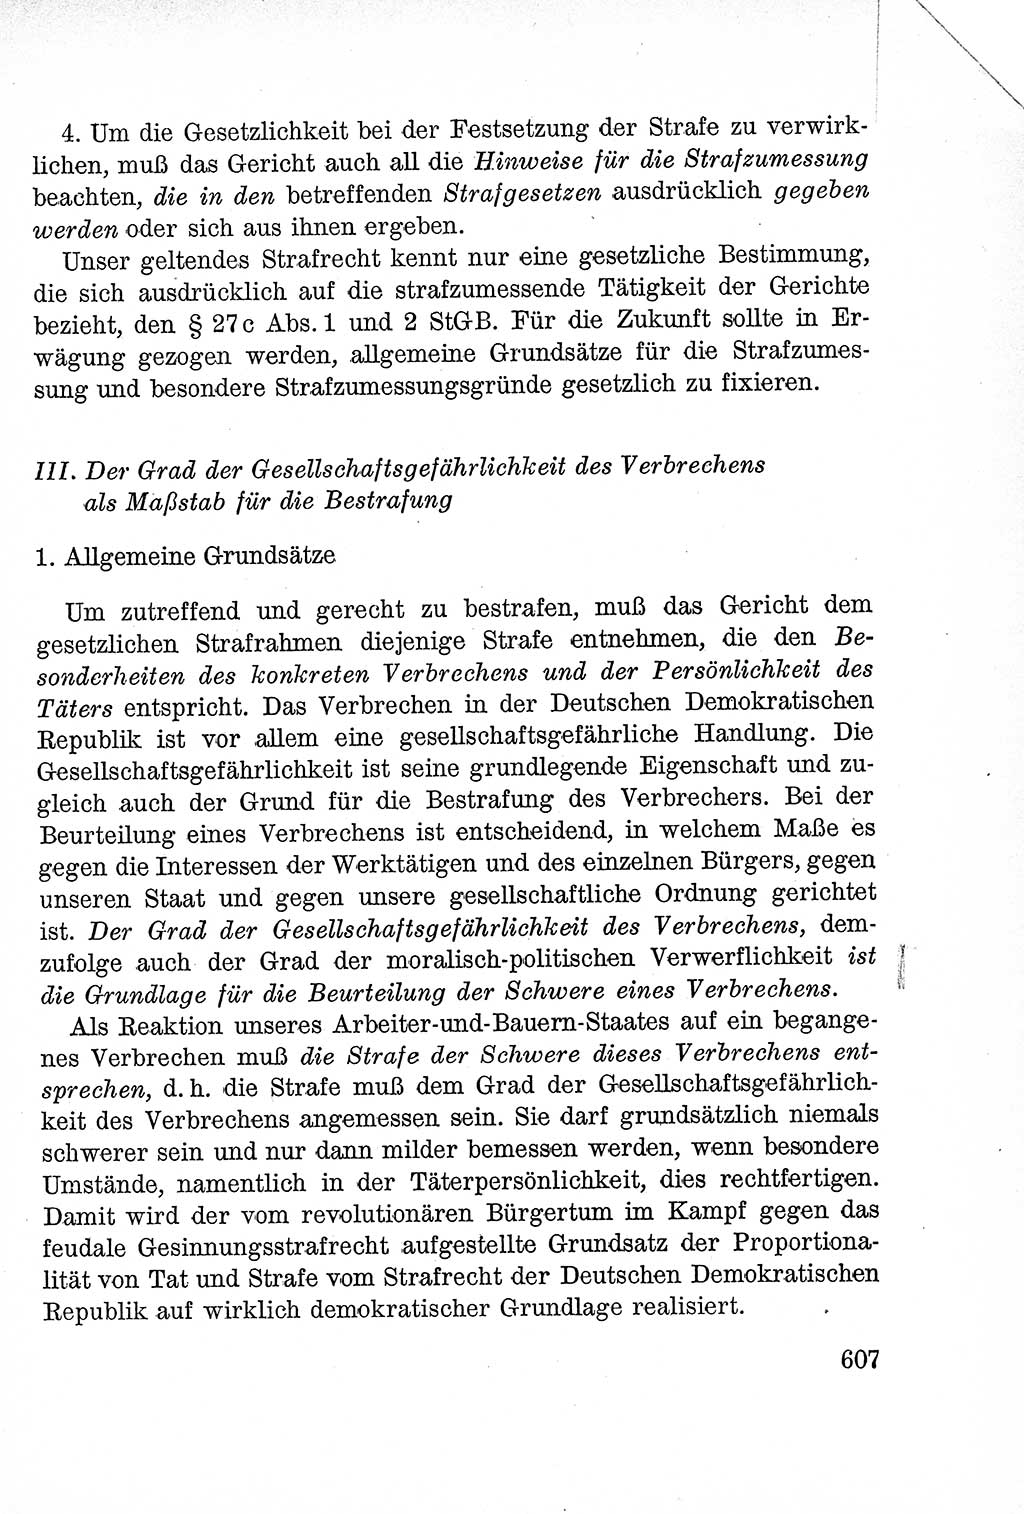 Lehrbuch des Strafrechts der Deutschen Demokratischen Republik (DDR), Allgemeiner Teil 1957, Seite 607 (Lb. Strafr. DDR AT 1957, S. 607)